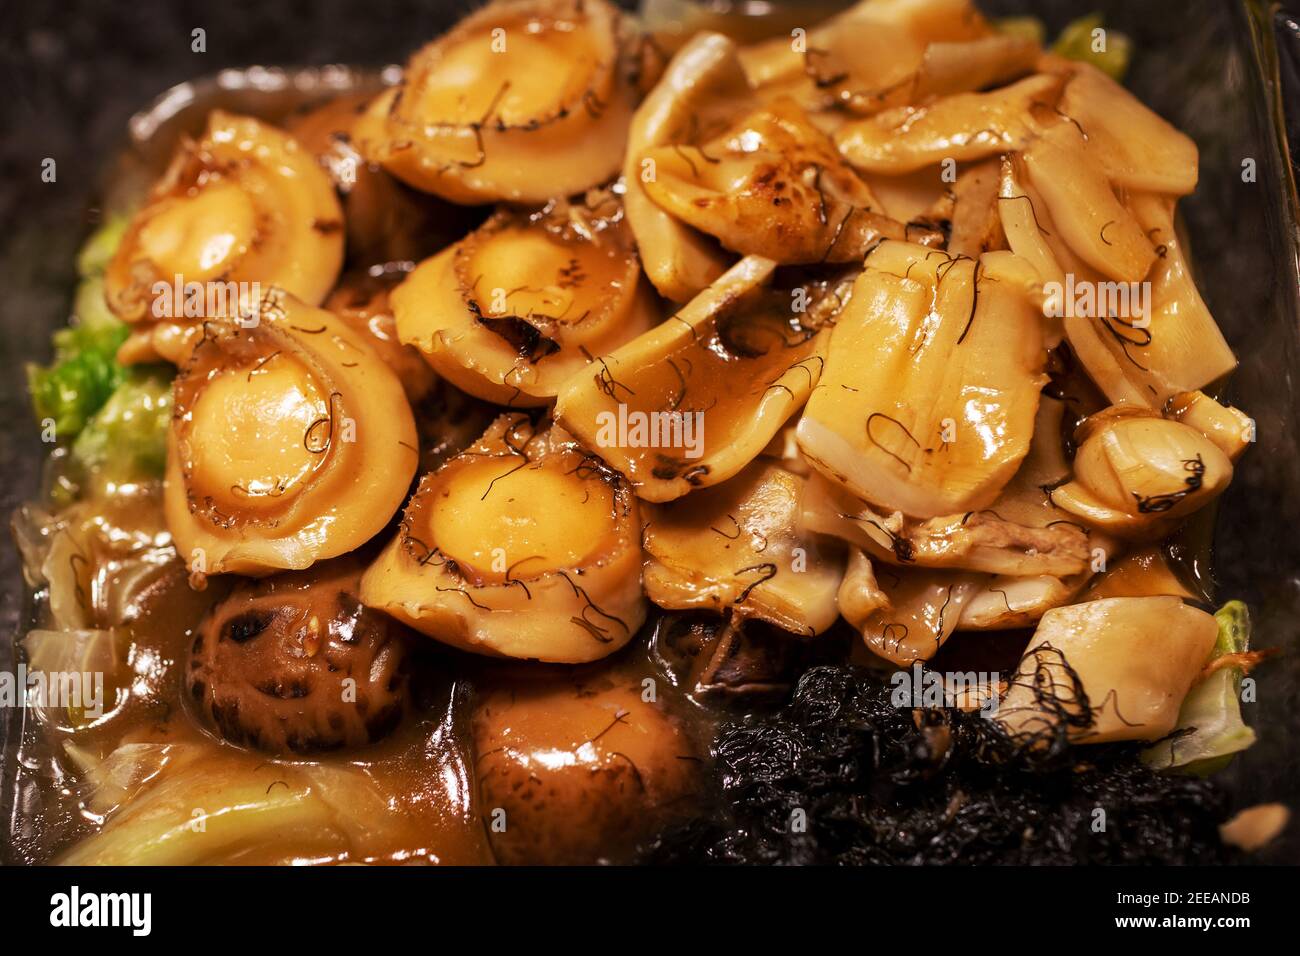 En gros plan de la cuisine chinoise traditionnelle du nouvel an, délicatesse de l'abalone braisée, de la maw de poisson, des légumes à cheveux ou de la graisse Choy et des champignons shiitake servis sur la laisse Banque D'Images